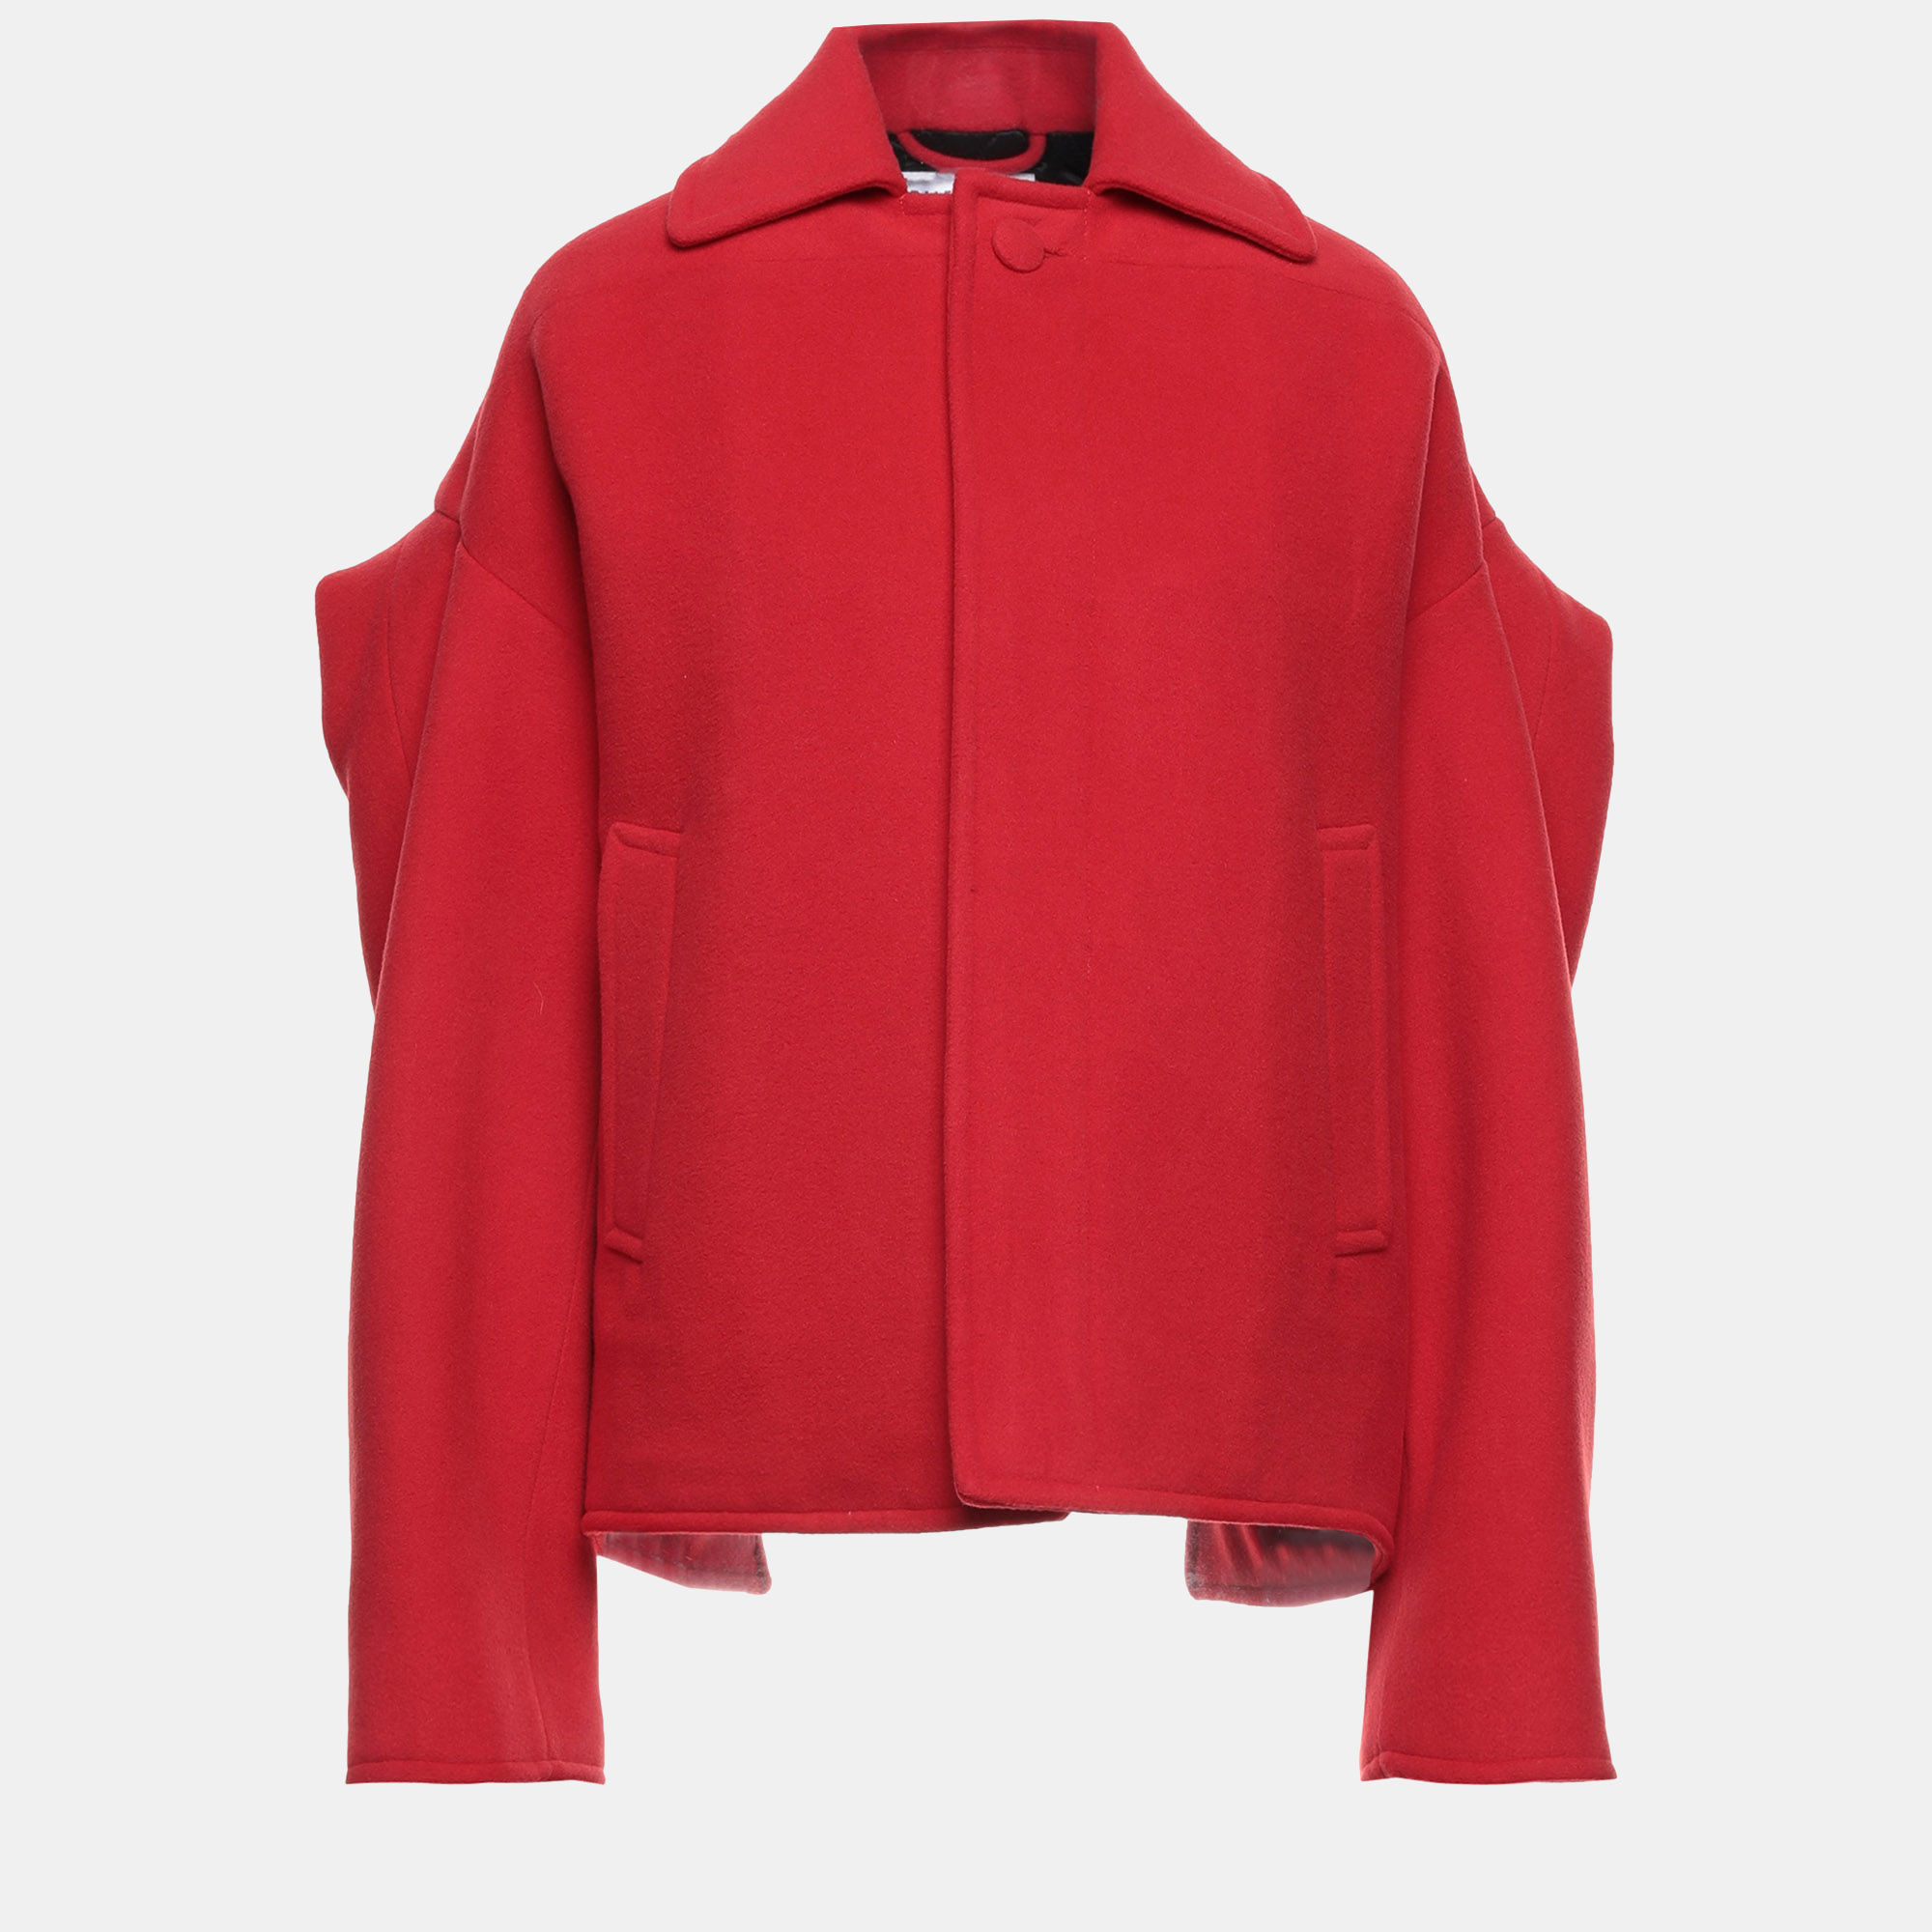 Balenciaga red wool coat 34